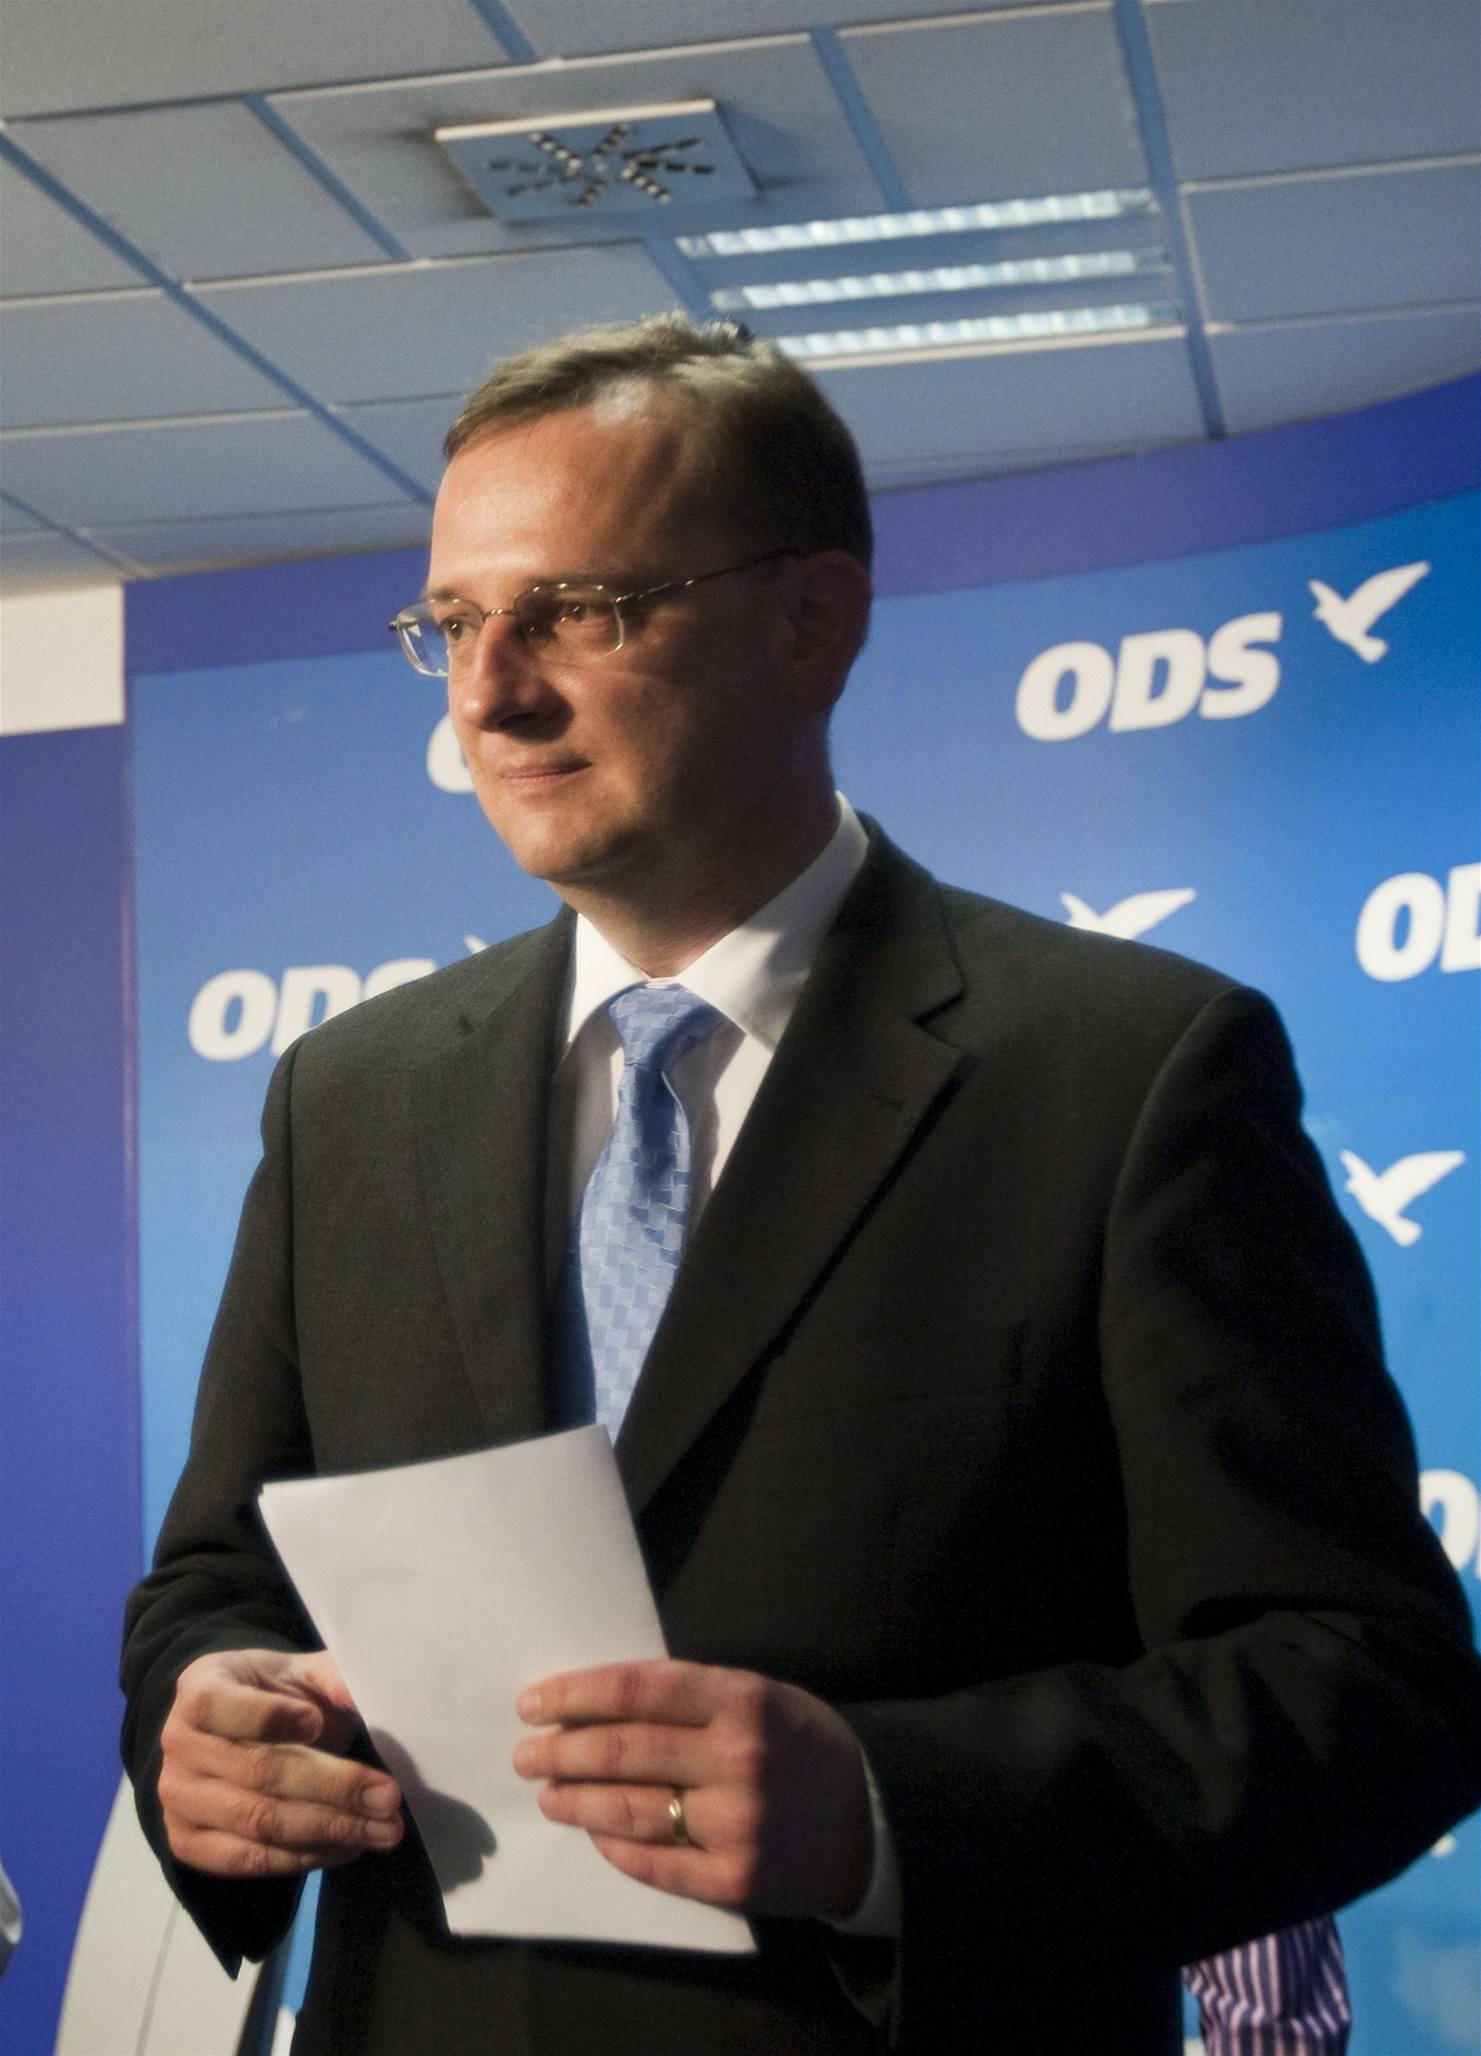 Tiskov konference ODS - Petr Neas